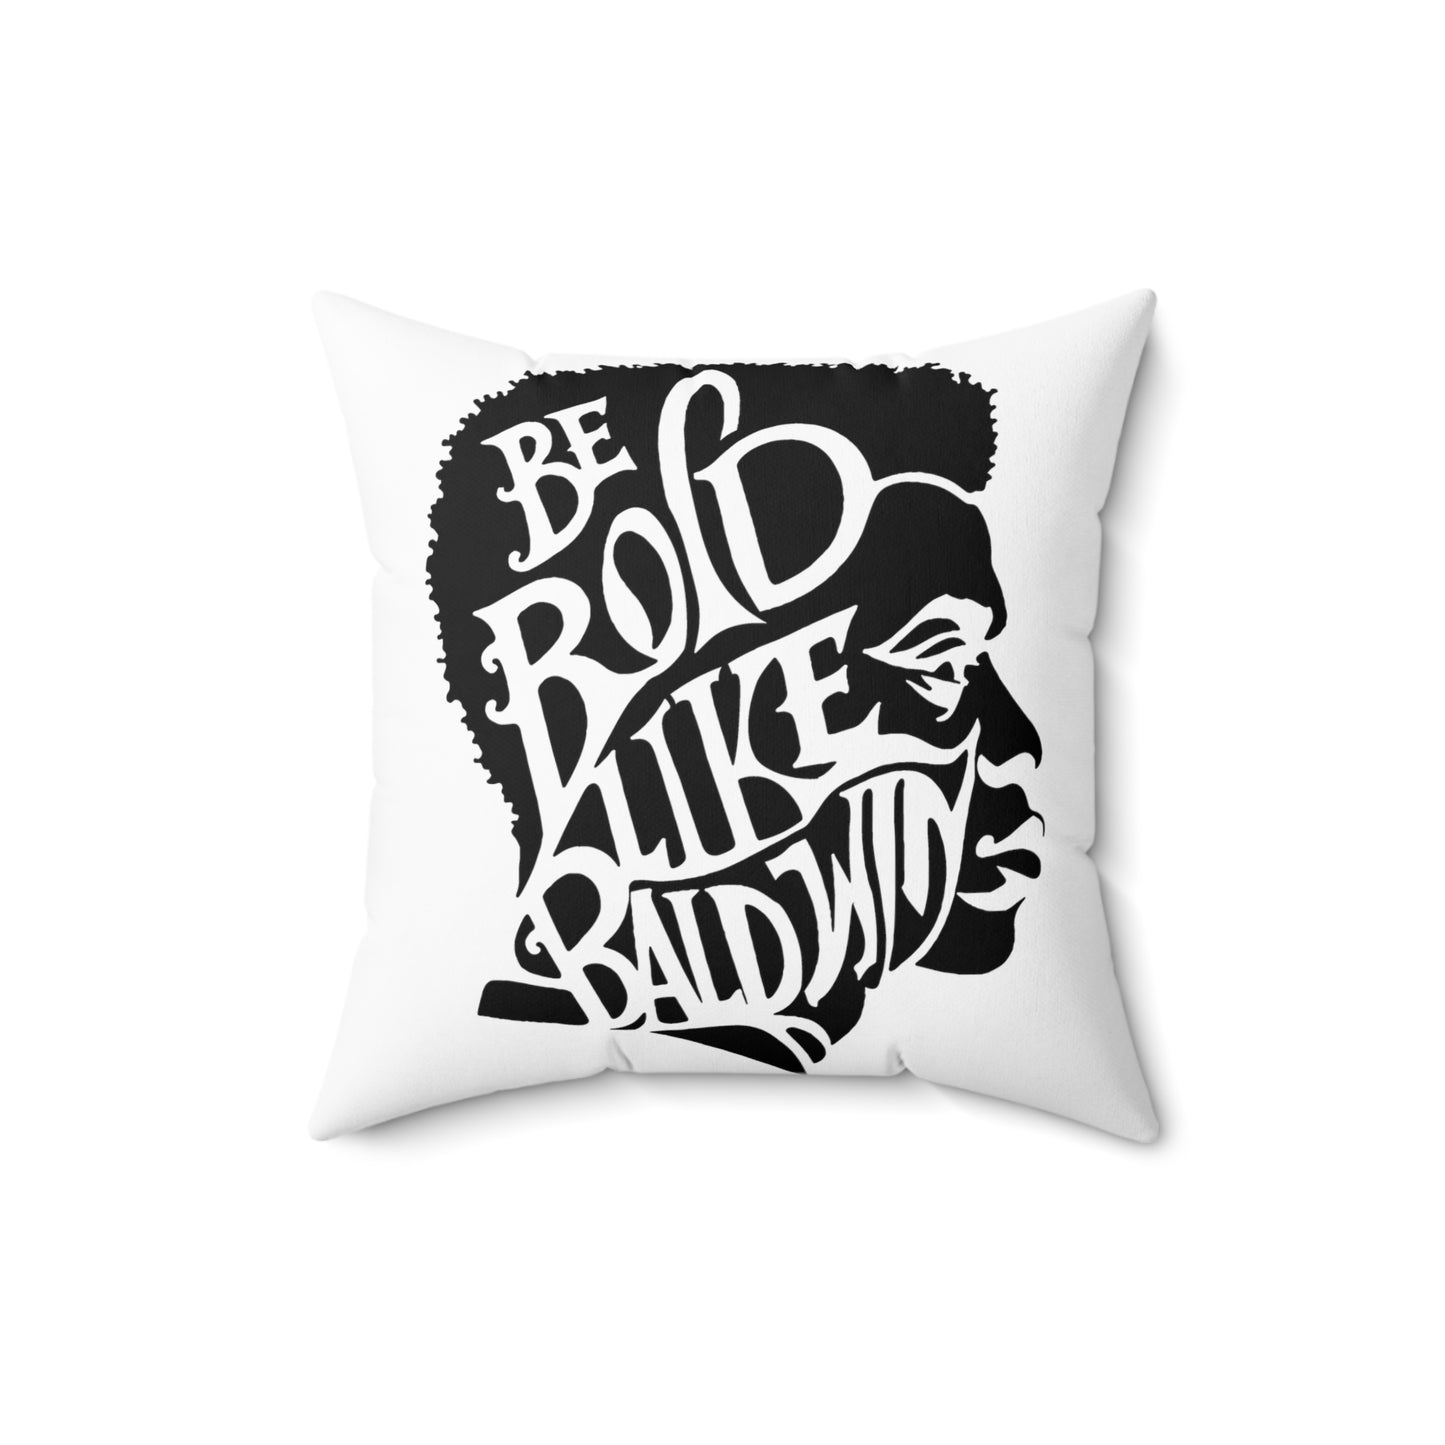 James Baldwin "Be Bold" Pillow - White